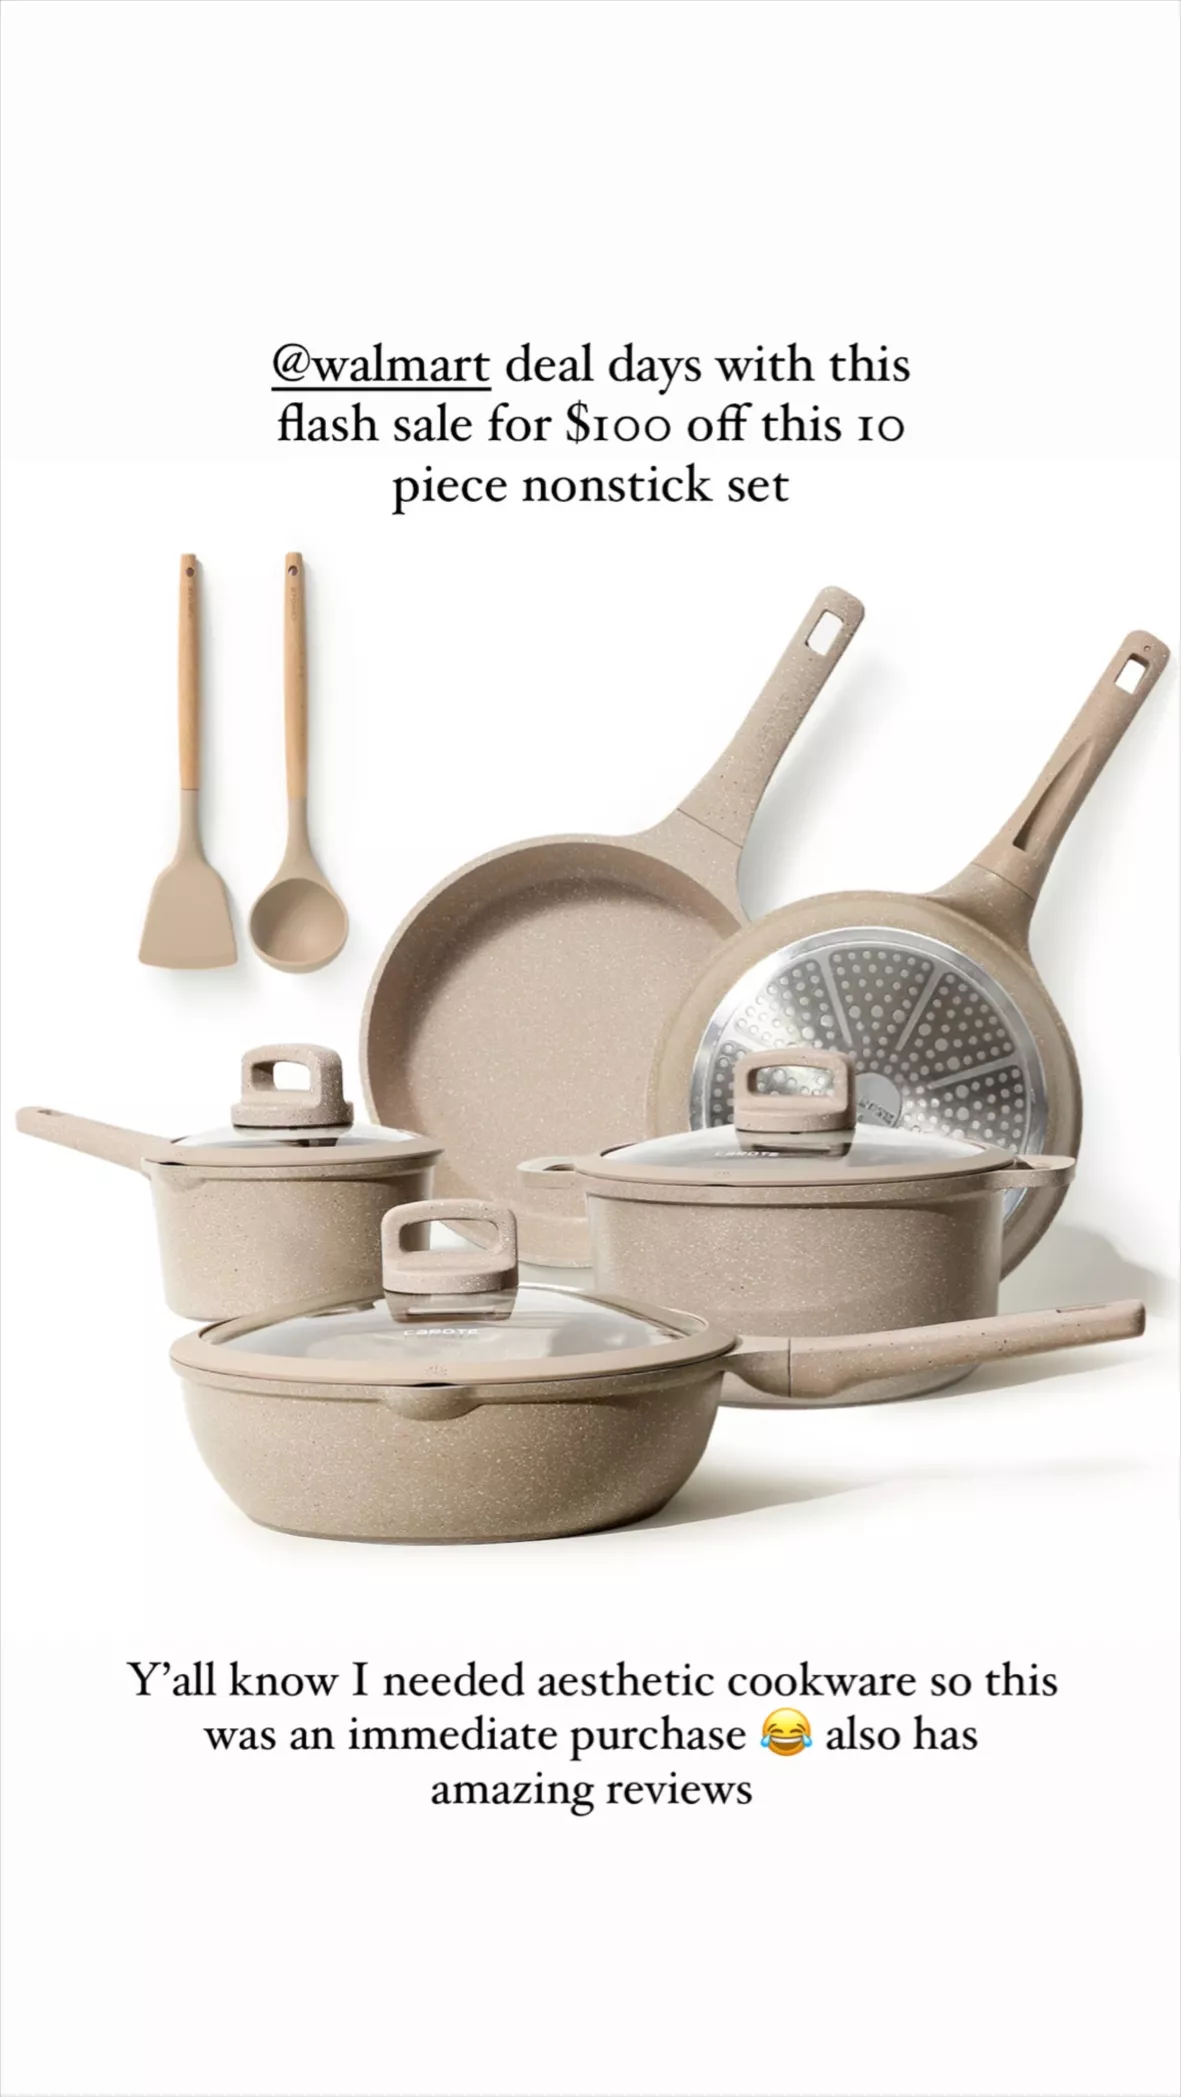 Carote Nonstick Kitchen Cookware Set,10 Pcs Pots and Pans Set